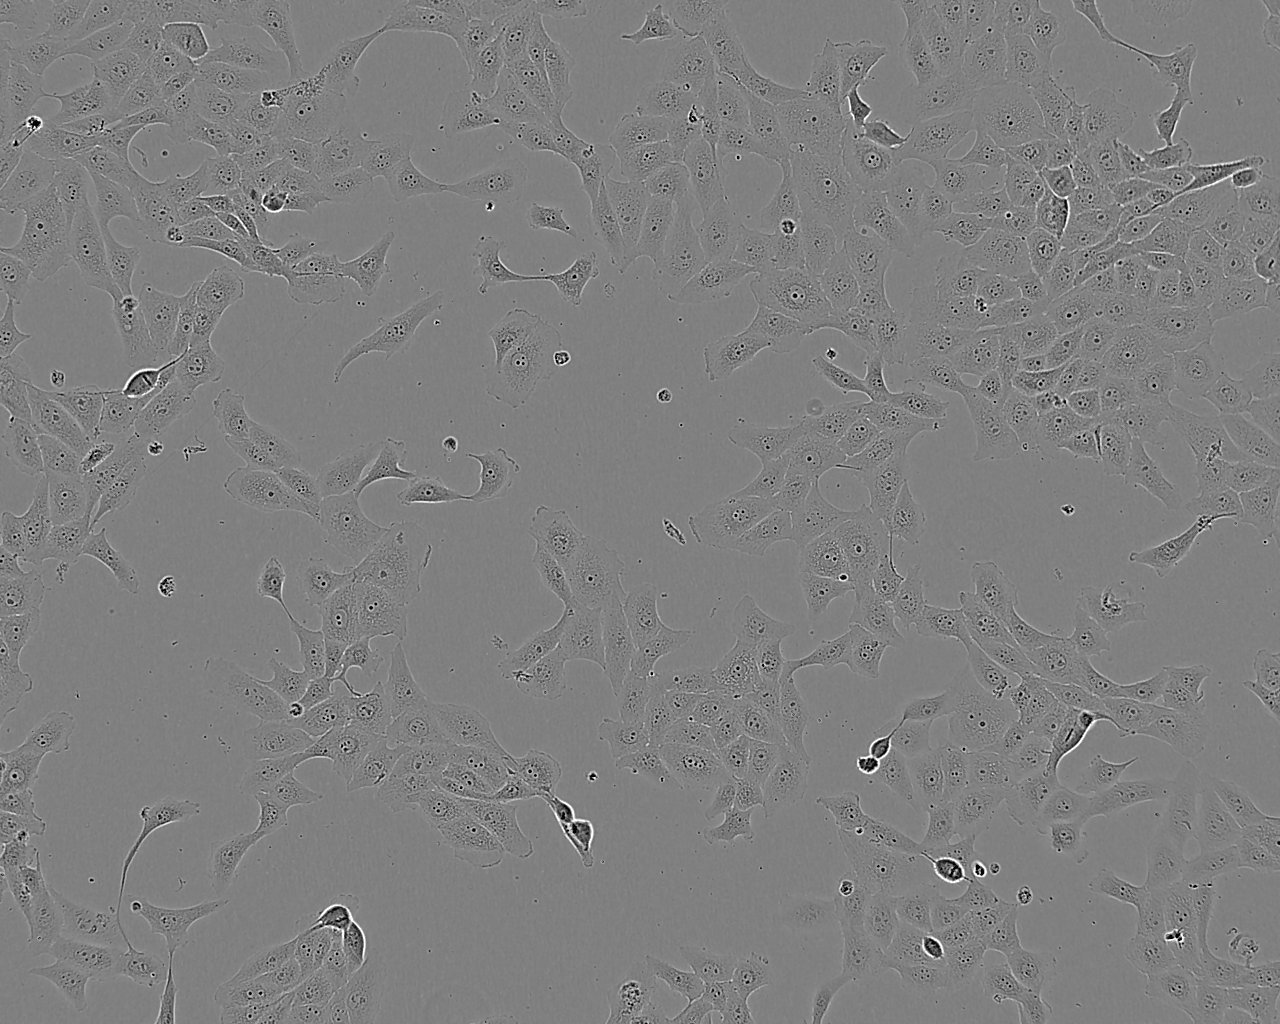 HEK293T/17 人胚肾细胞系